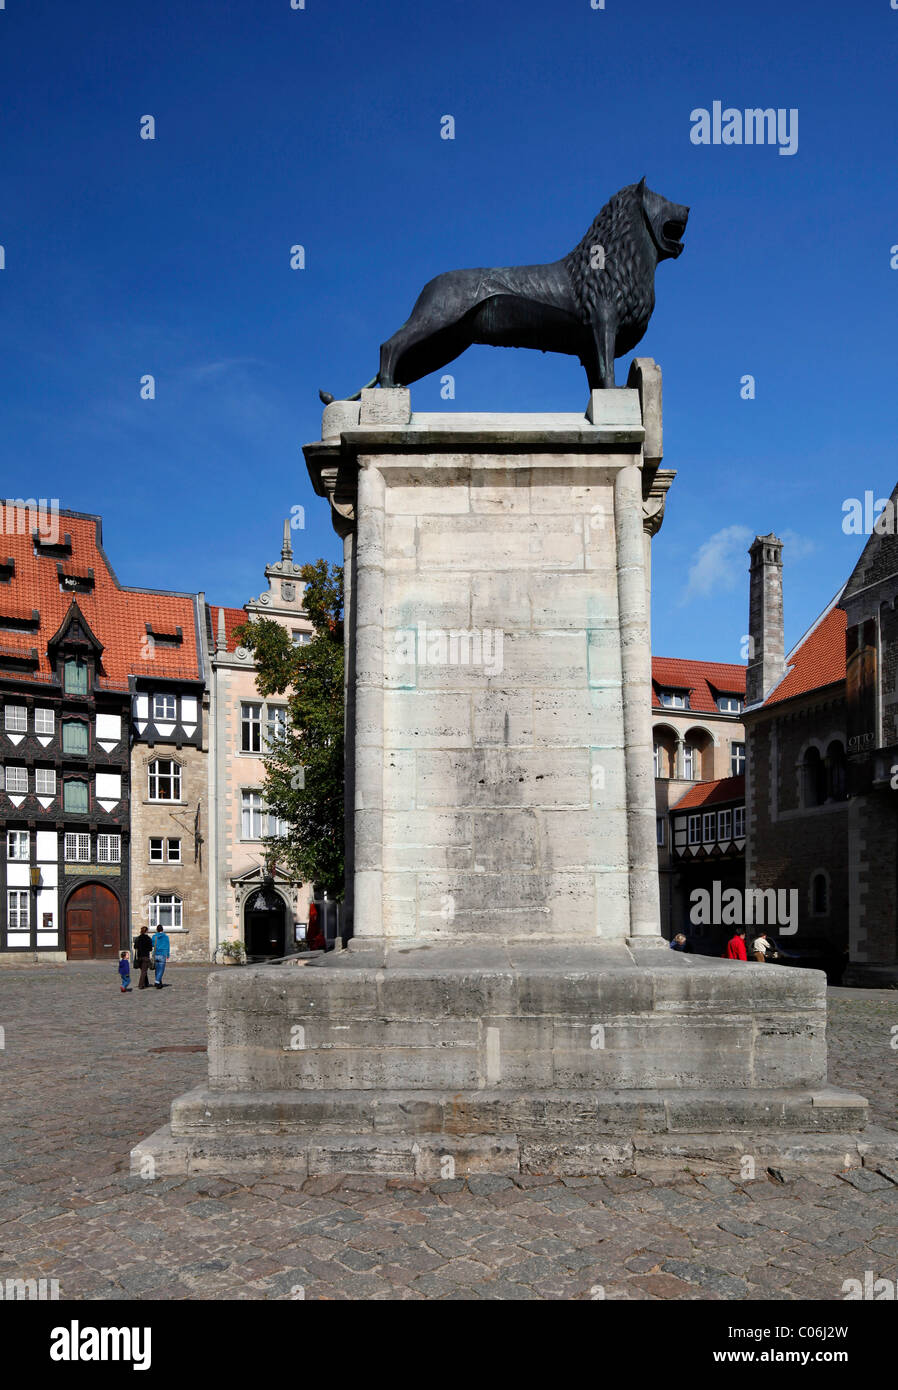 Braunschweiger Loewe il monumento del leone sulla piazza Burgplatz, Braunschweig, Bassa Sassonia, Germania, Europa Foto Stock